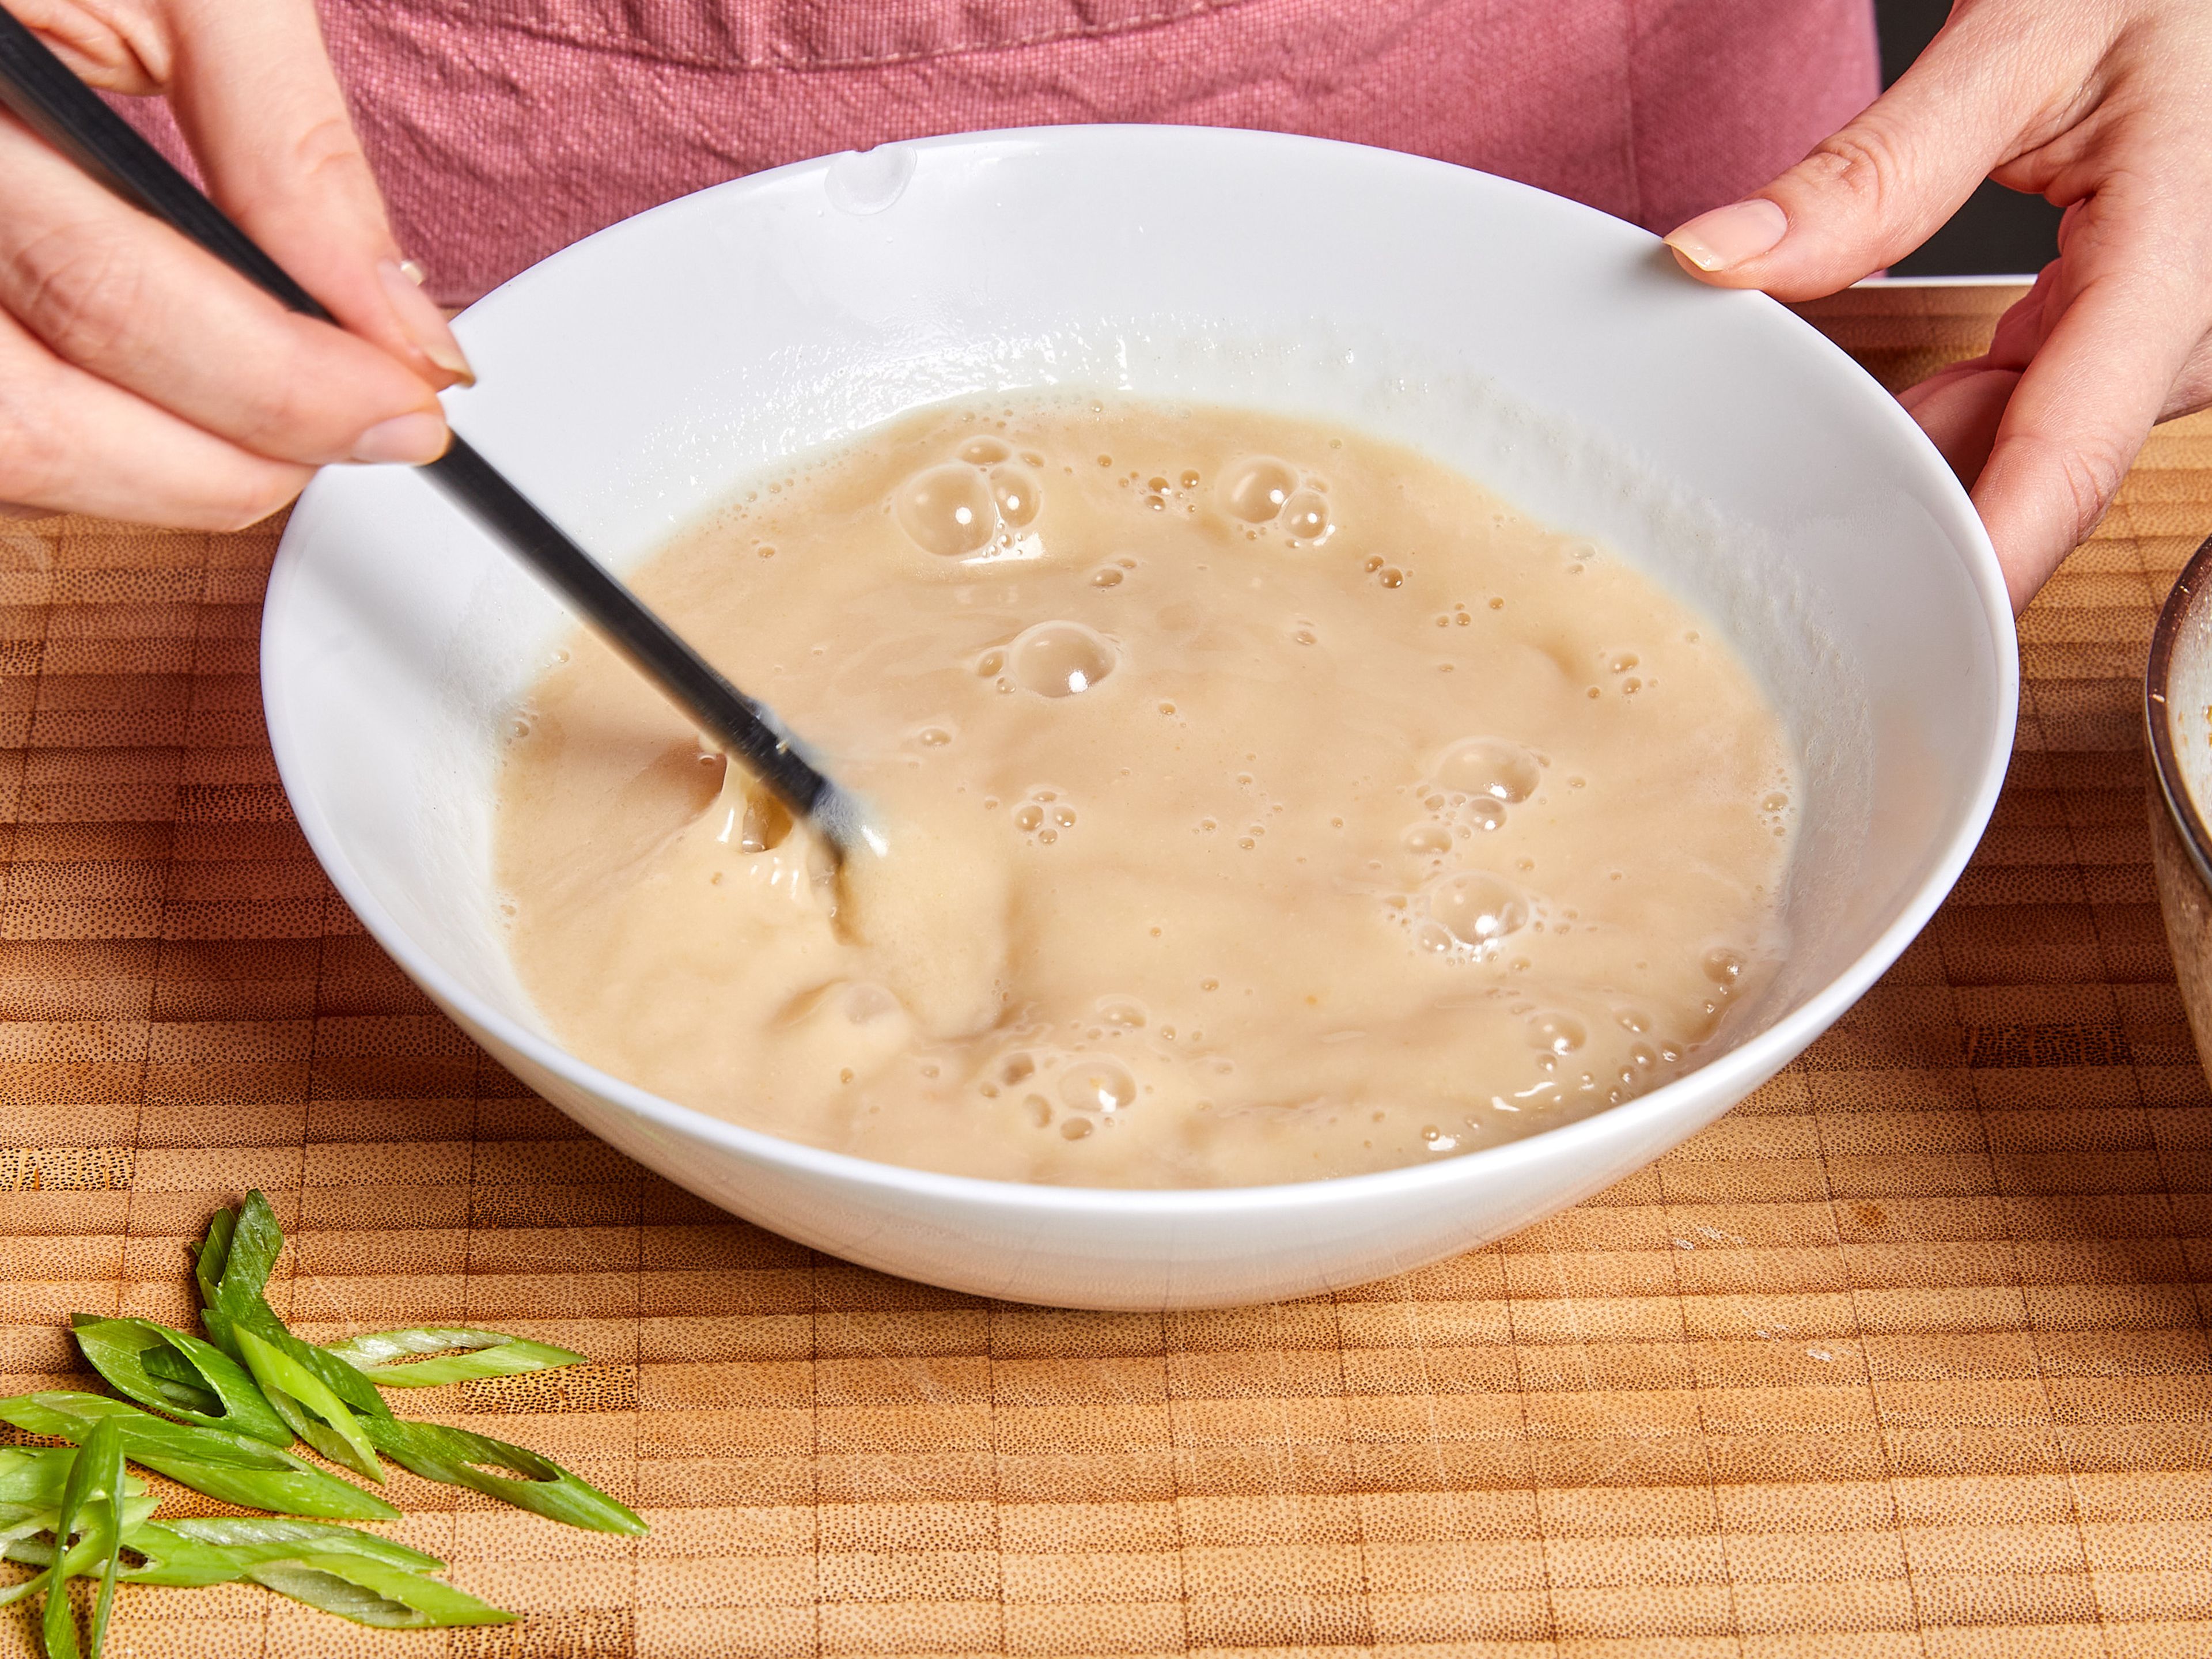 In dem zuvor verwendeten Topf Gemüsebrühe und Sojamilch bei mittlerer Hitze zum Kochen bringen. Die Suppenbasis auf Schüsseln verteilen, die heiße Brühe darüber gießen und mit Stäbchen verrühren, bis alles vermischt ist. Ramen-Nudeln, Pak Choi, Mais und Sojahack auf die Schüsseln verteilen. Mit Frühlingszwiebelgrün, Sesam und Chiliöl garniert servieren.